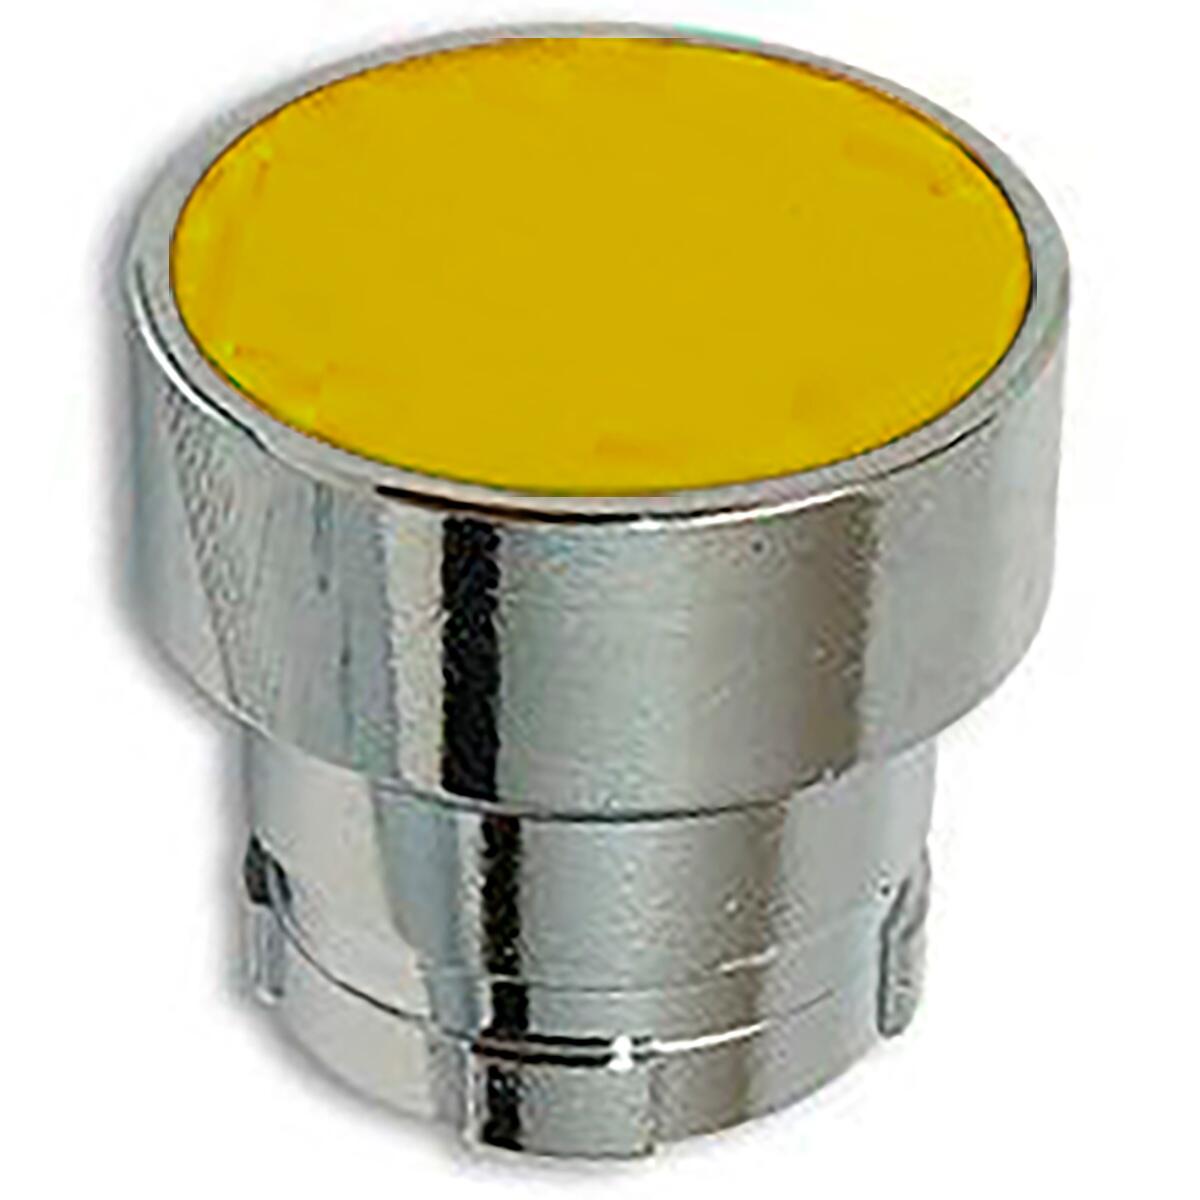 Botão Comando Chint Np2-Ba50 Amarelo Metal